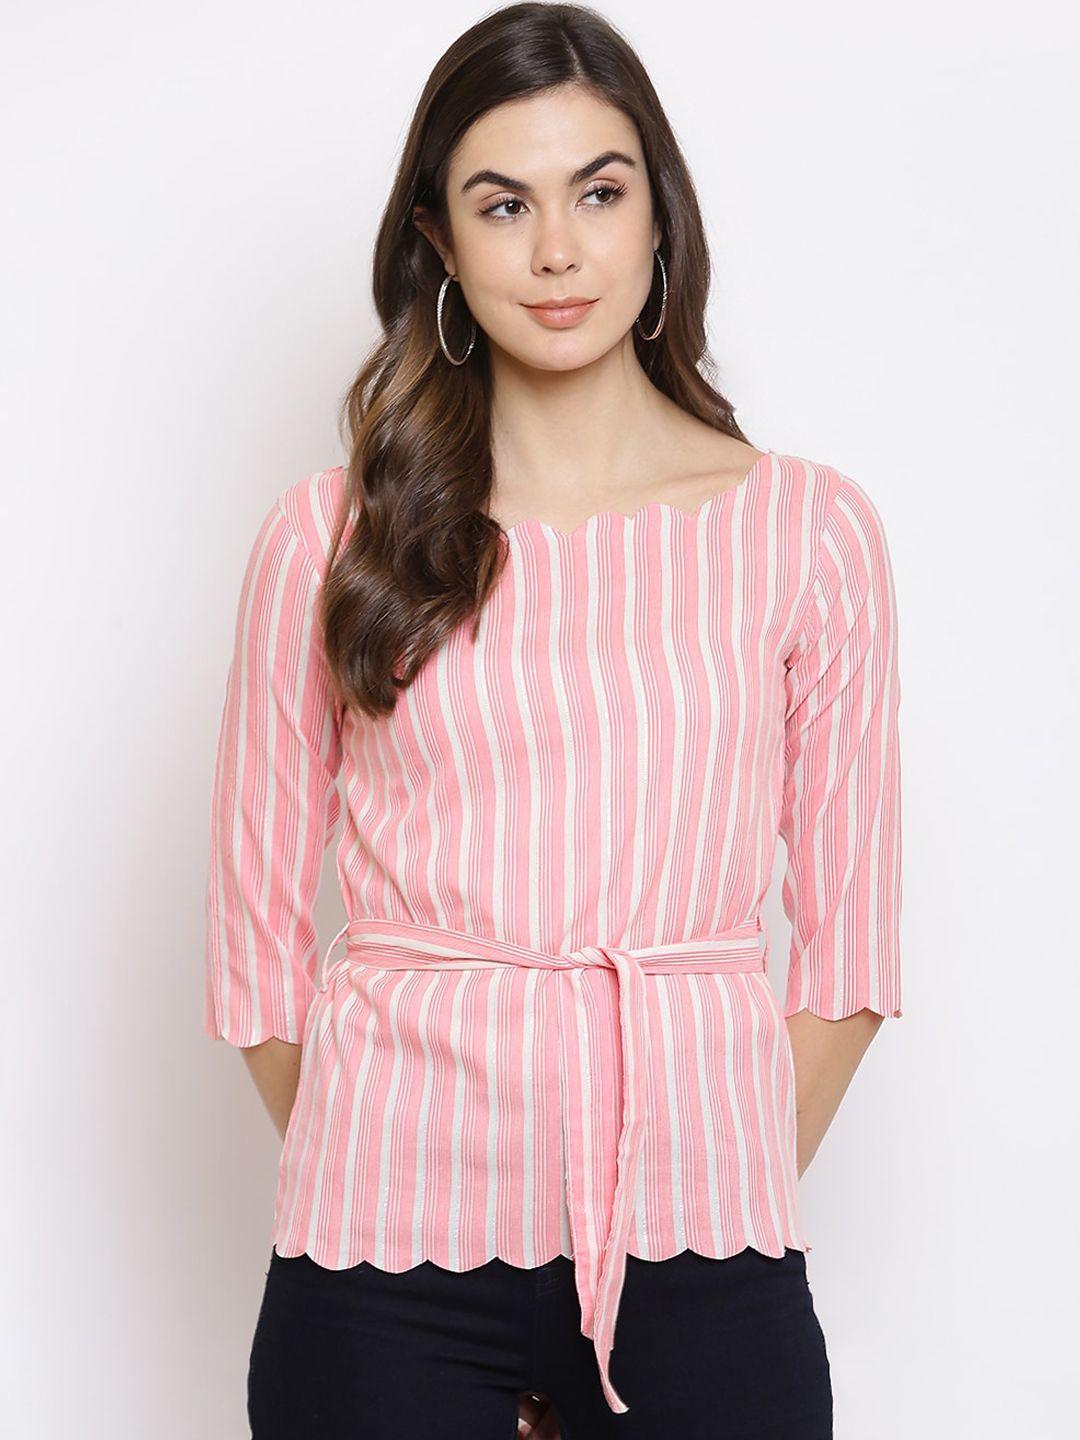 mayra women pink & white striped top